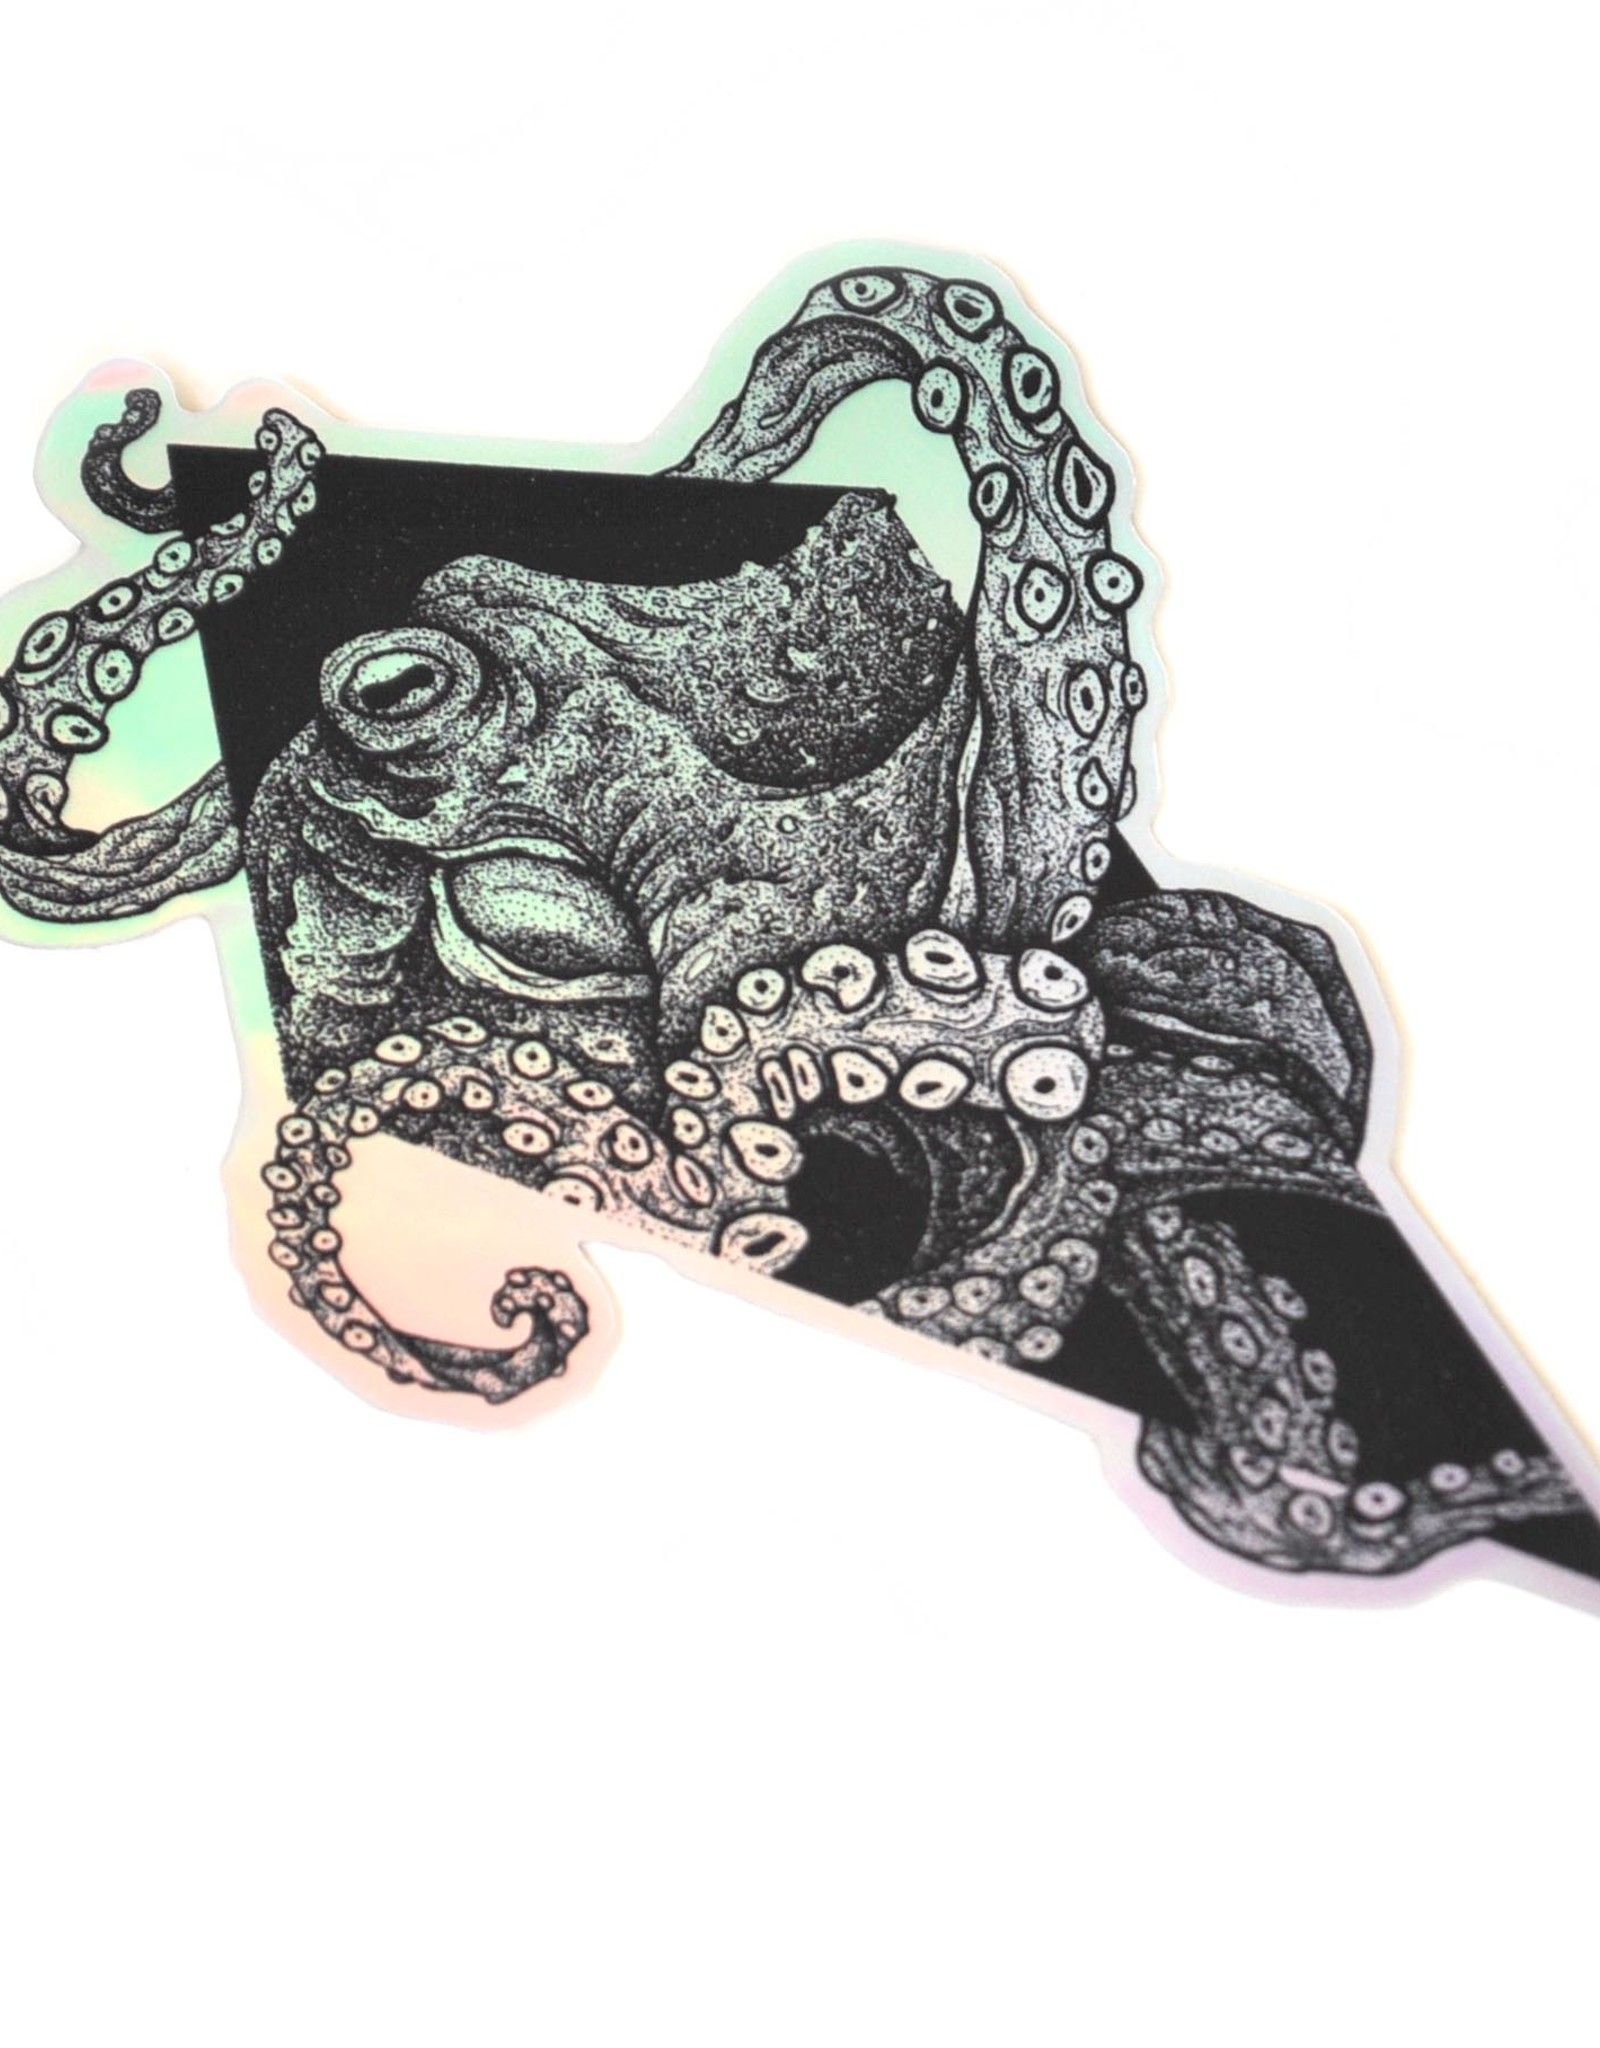 Cephalopod by Noah Durany